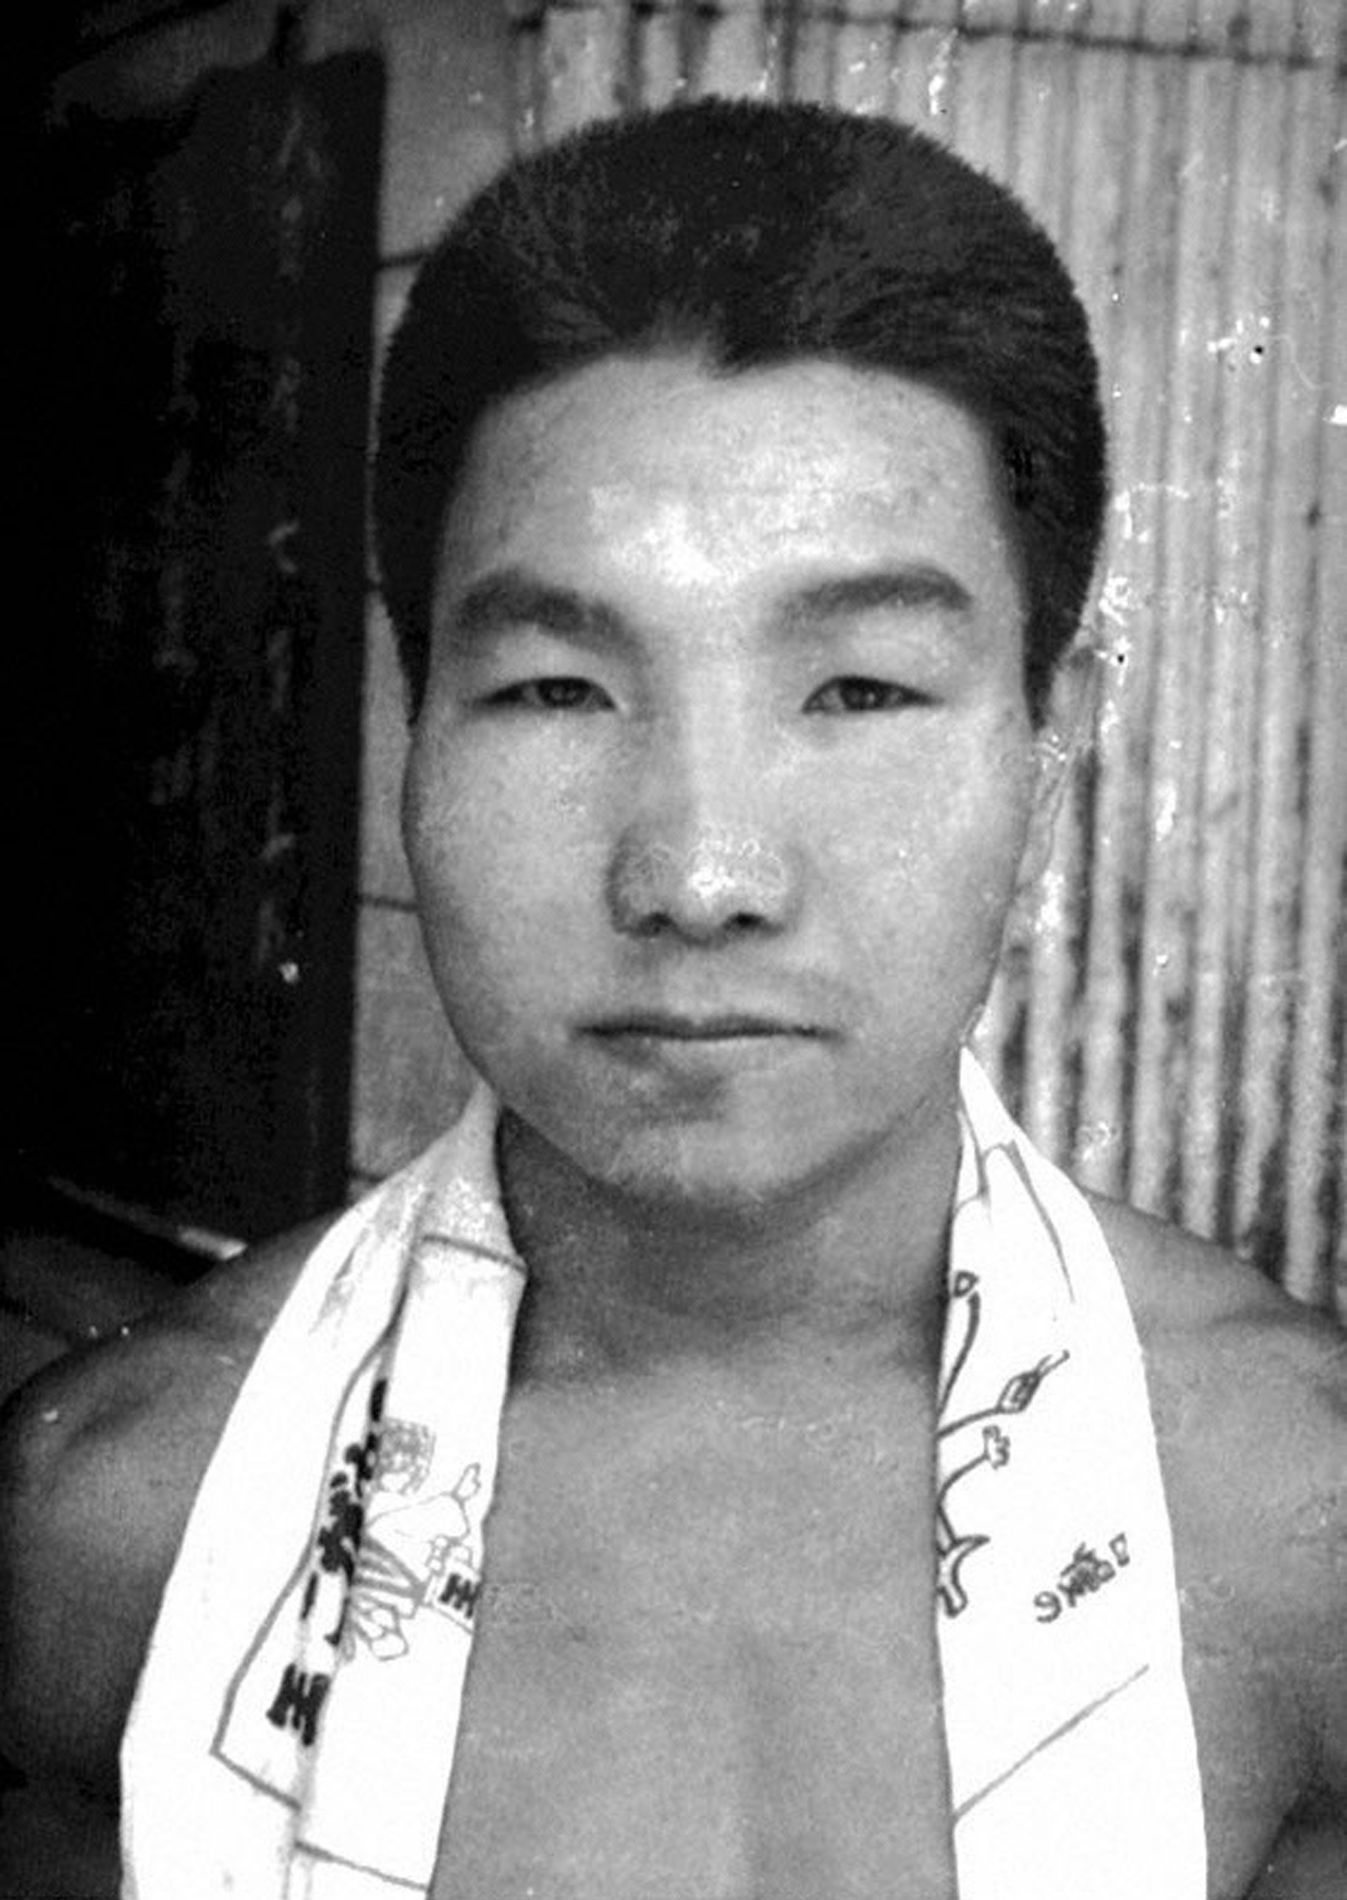 Handout picture of Iwao Hakamada